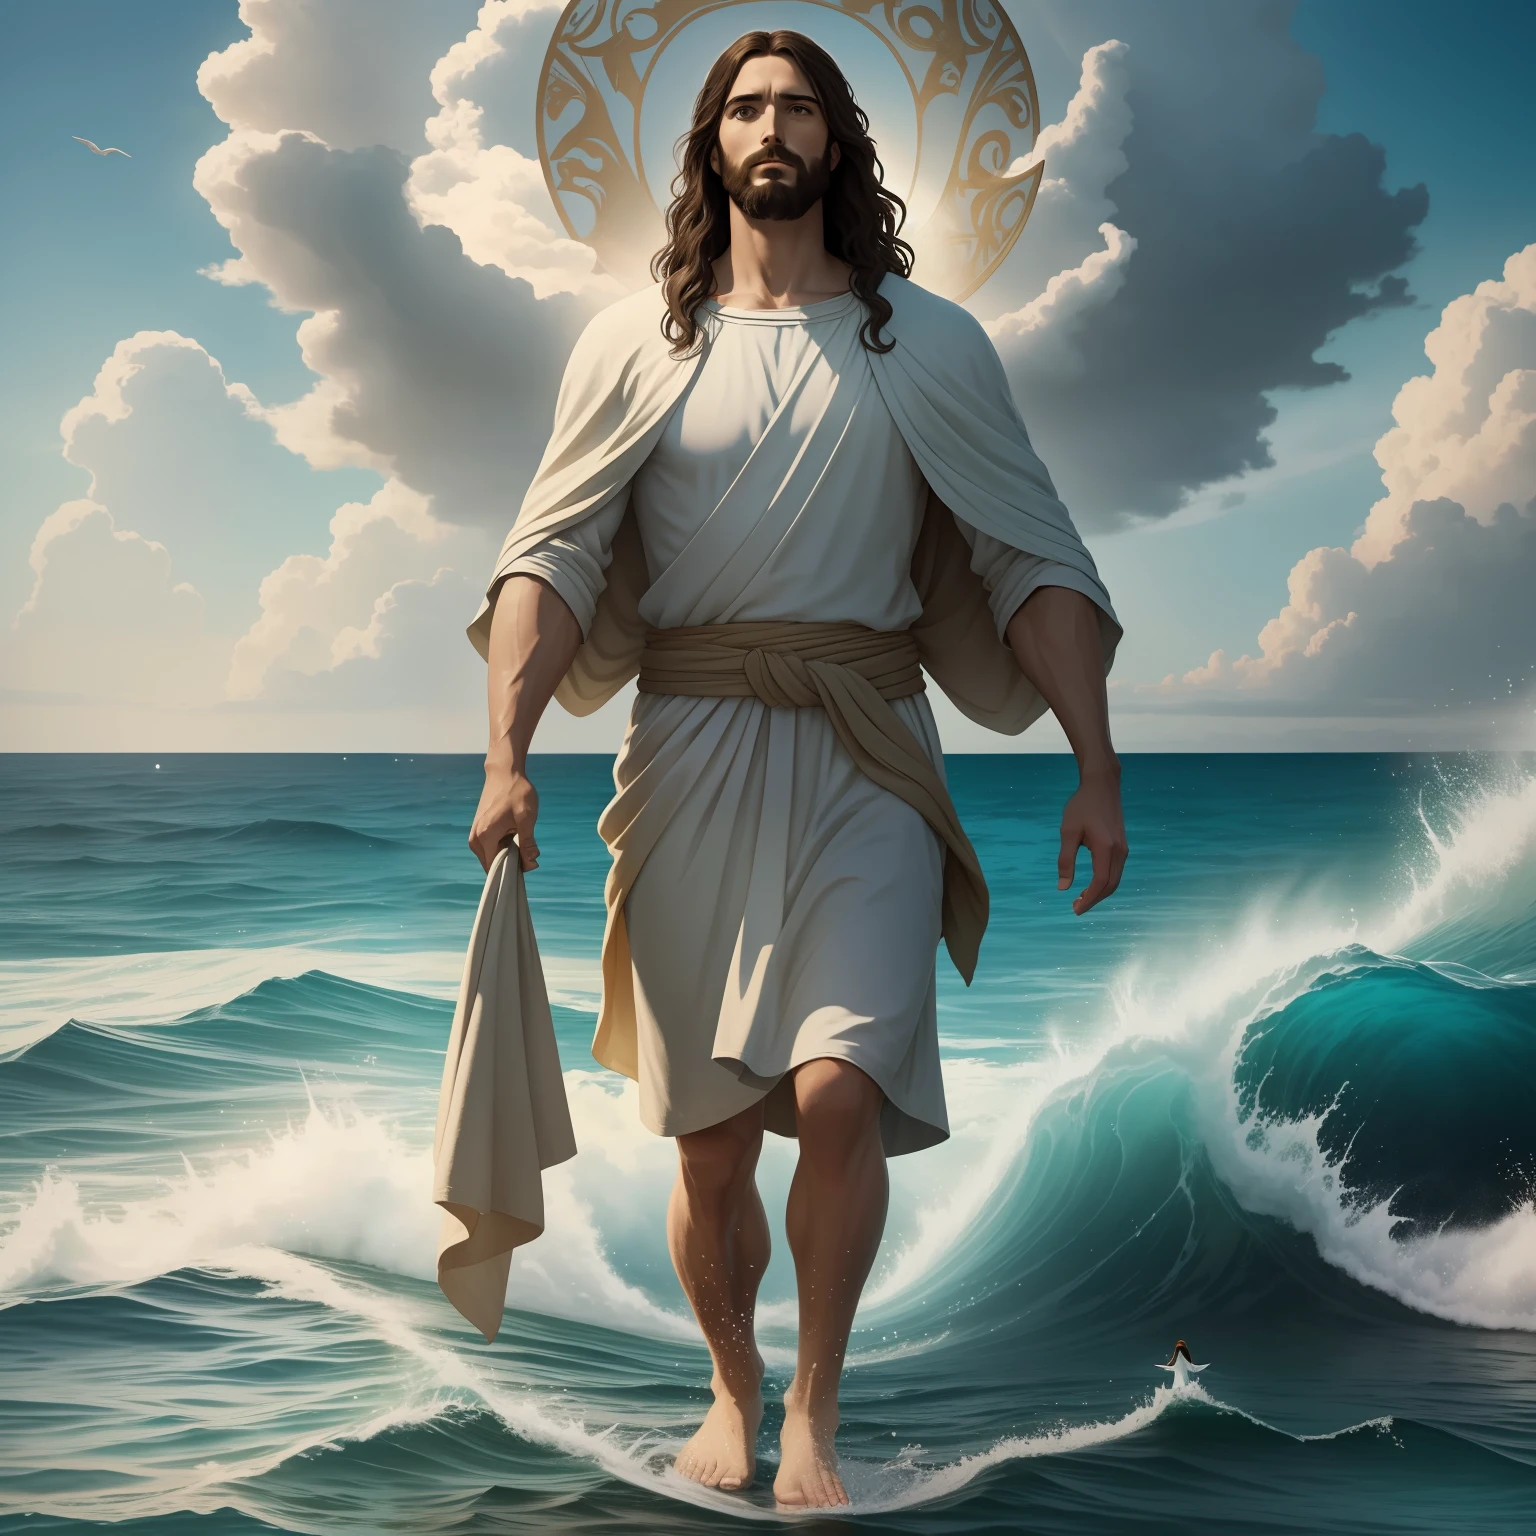 พระเยซูทรงเดินบนน้ำ with a heaven cloud in the background, พระเยซูทรงเดินบนน้ำ, ภาพประกอบในพระคัมภีร์, การเป็นตัวแทนในพระคัมภีร์ที่ยิ่งใหญ่, บังคับให้เขาหนี, ออกมาจากมหาสมุทร, ! จับมือกัน!, พรที่จะช่วยเหลือผู้คน, ขึ้นฝั่ง, เทพเจ้าแห่งมหาสมุทร, การแสดงที่สวยงาม, แสงอวยพรอันสดใส 8k, เหมือนจริง,